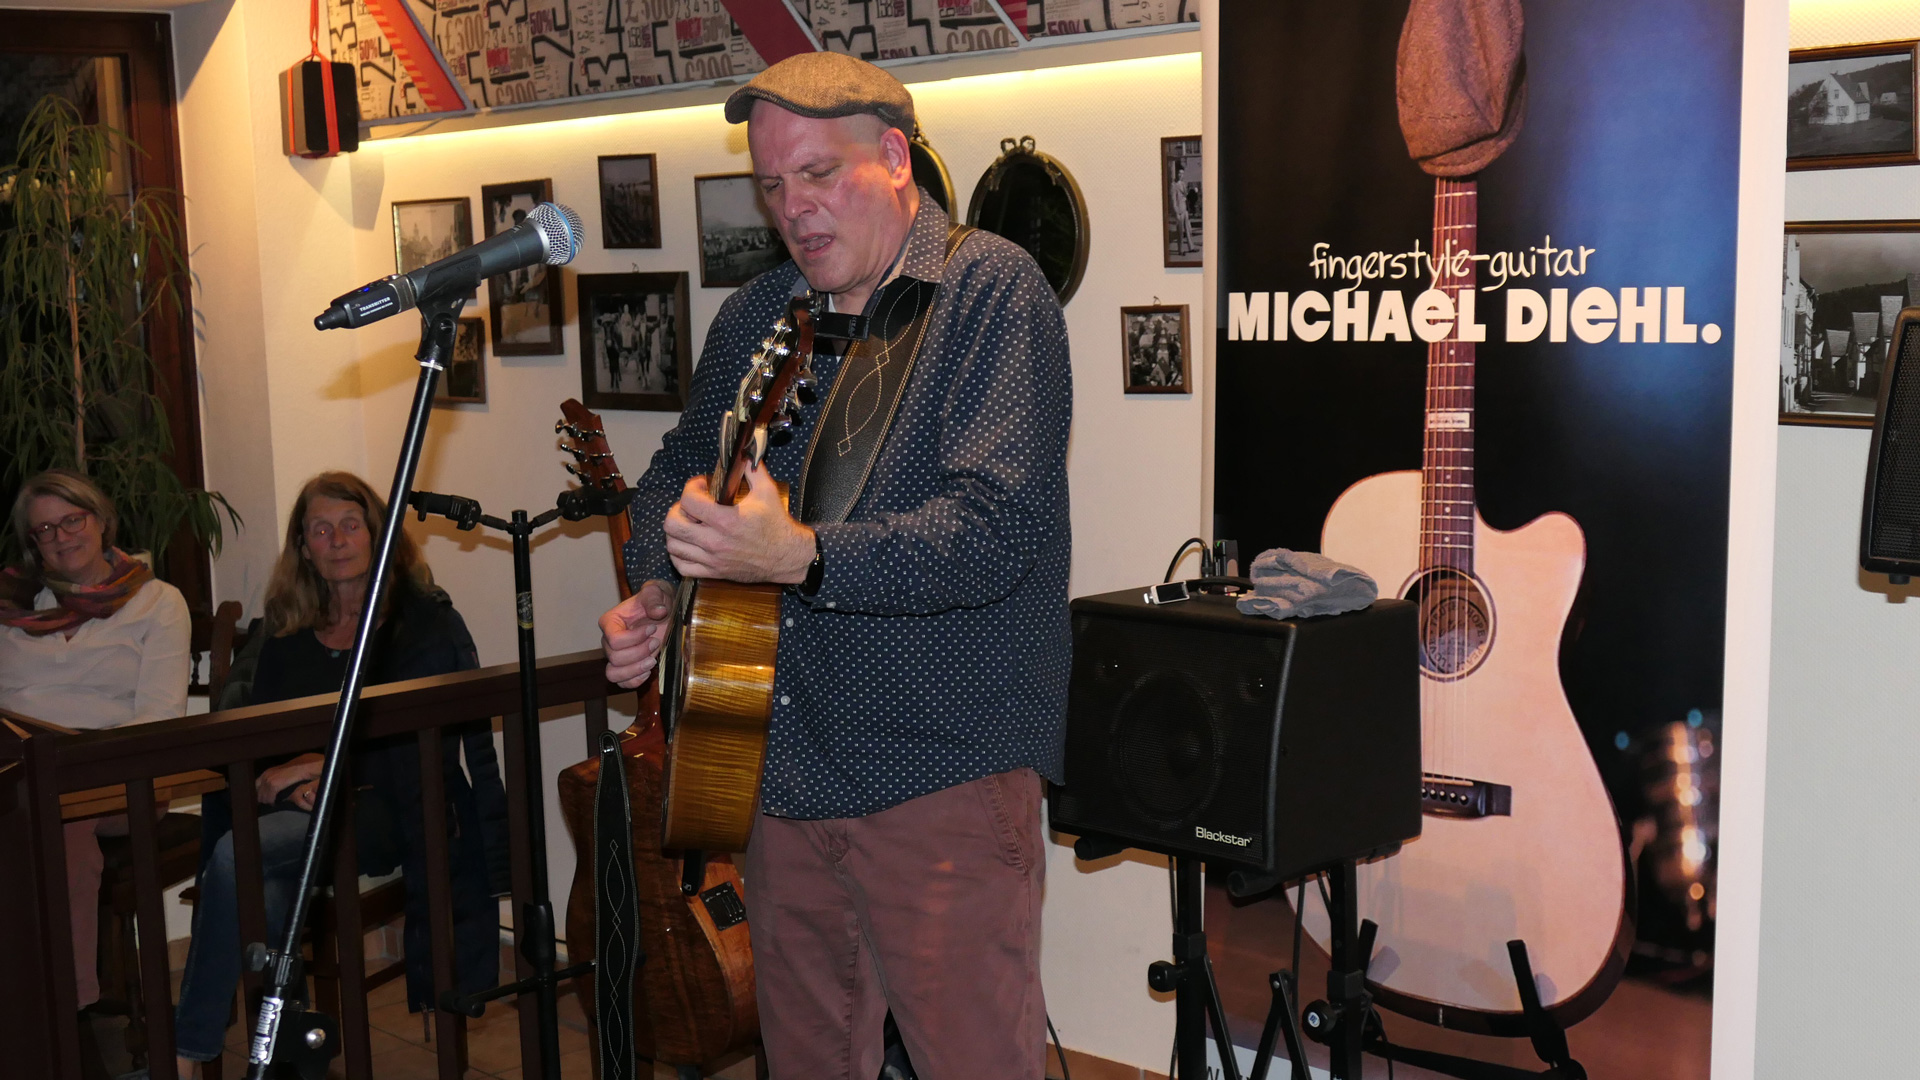 Michael Diehl mit Fingerstyle-Gitarre auf der Bühne im Kirchlein